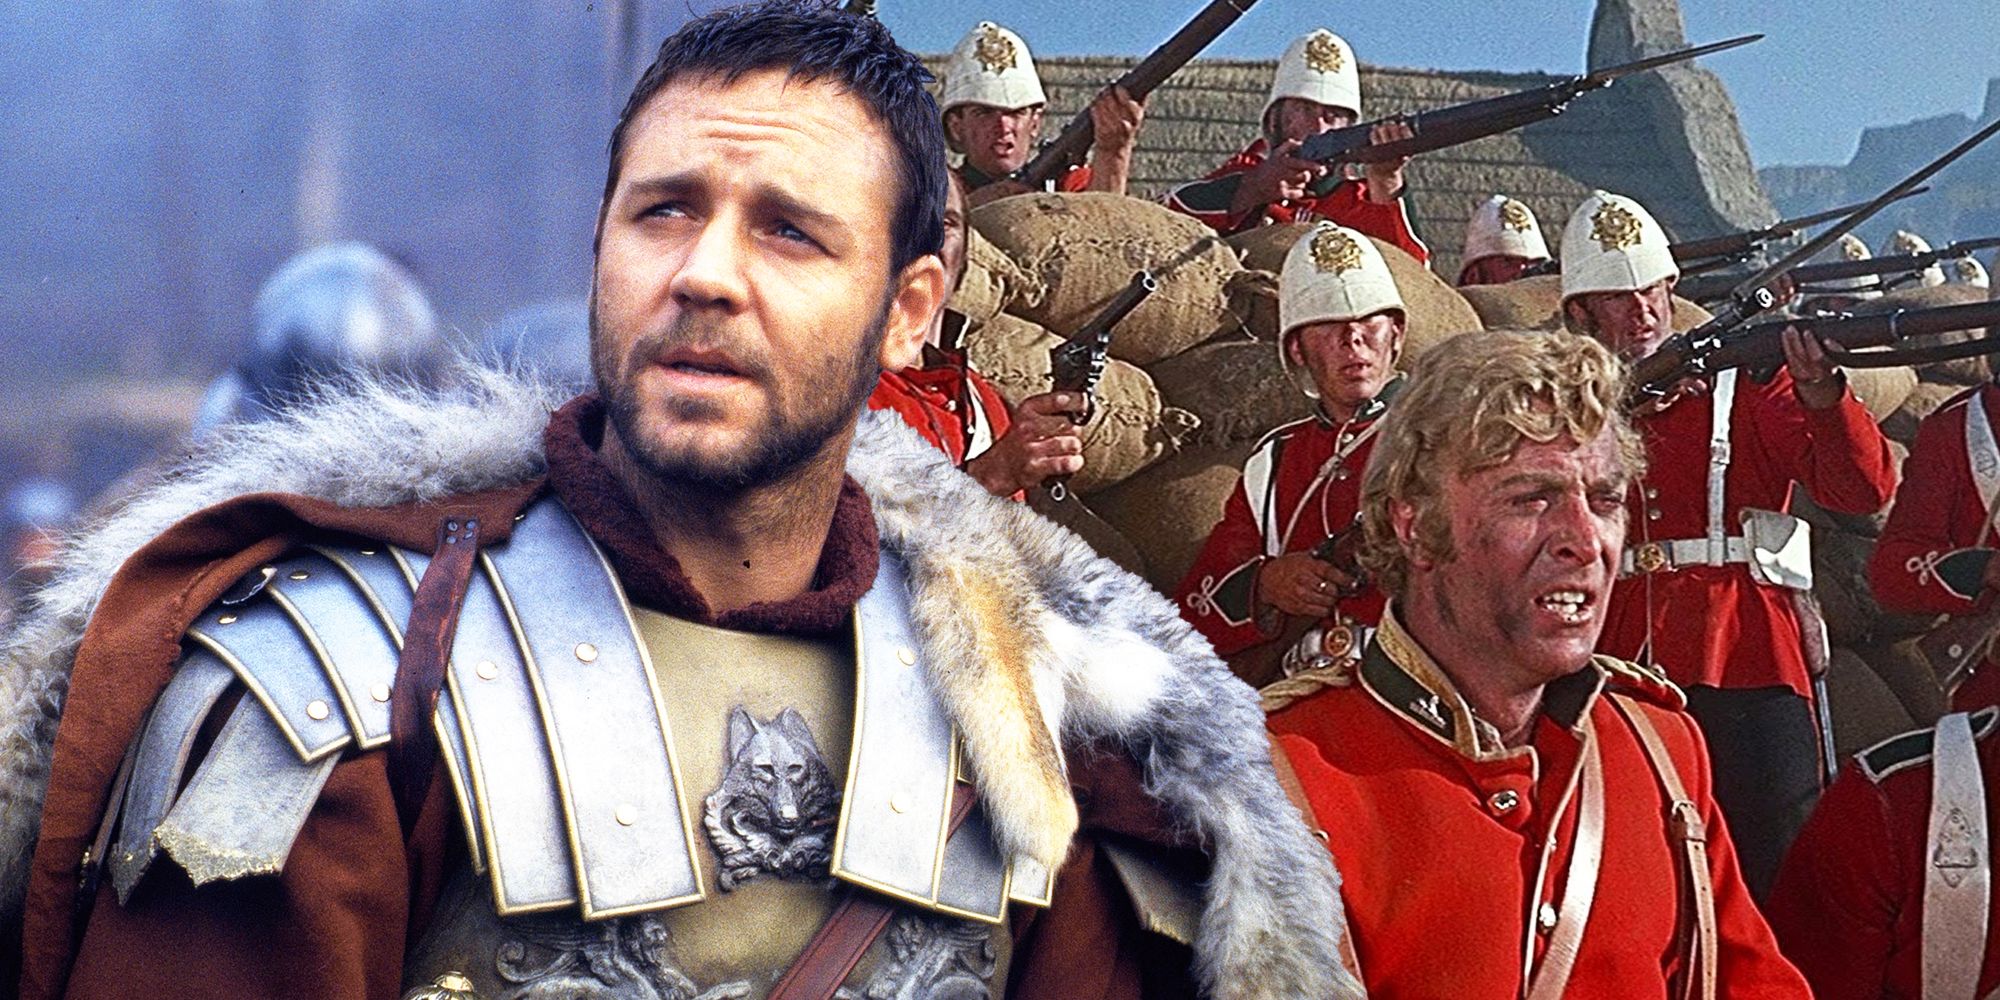 La apertura épica de Gladiator rinde homenaje en secreto a otra película de guerra clásica